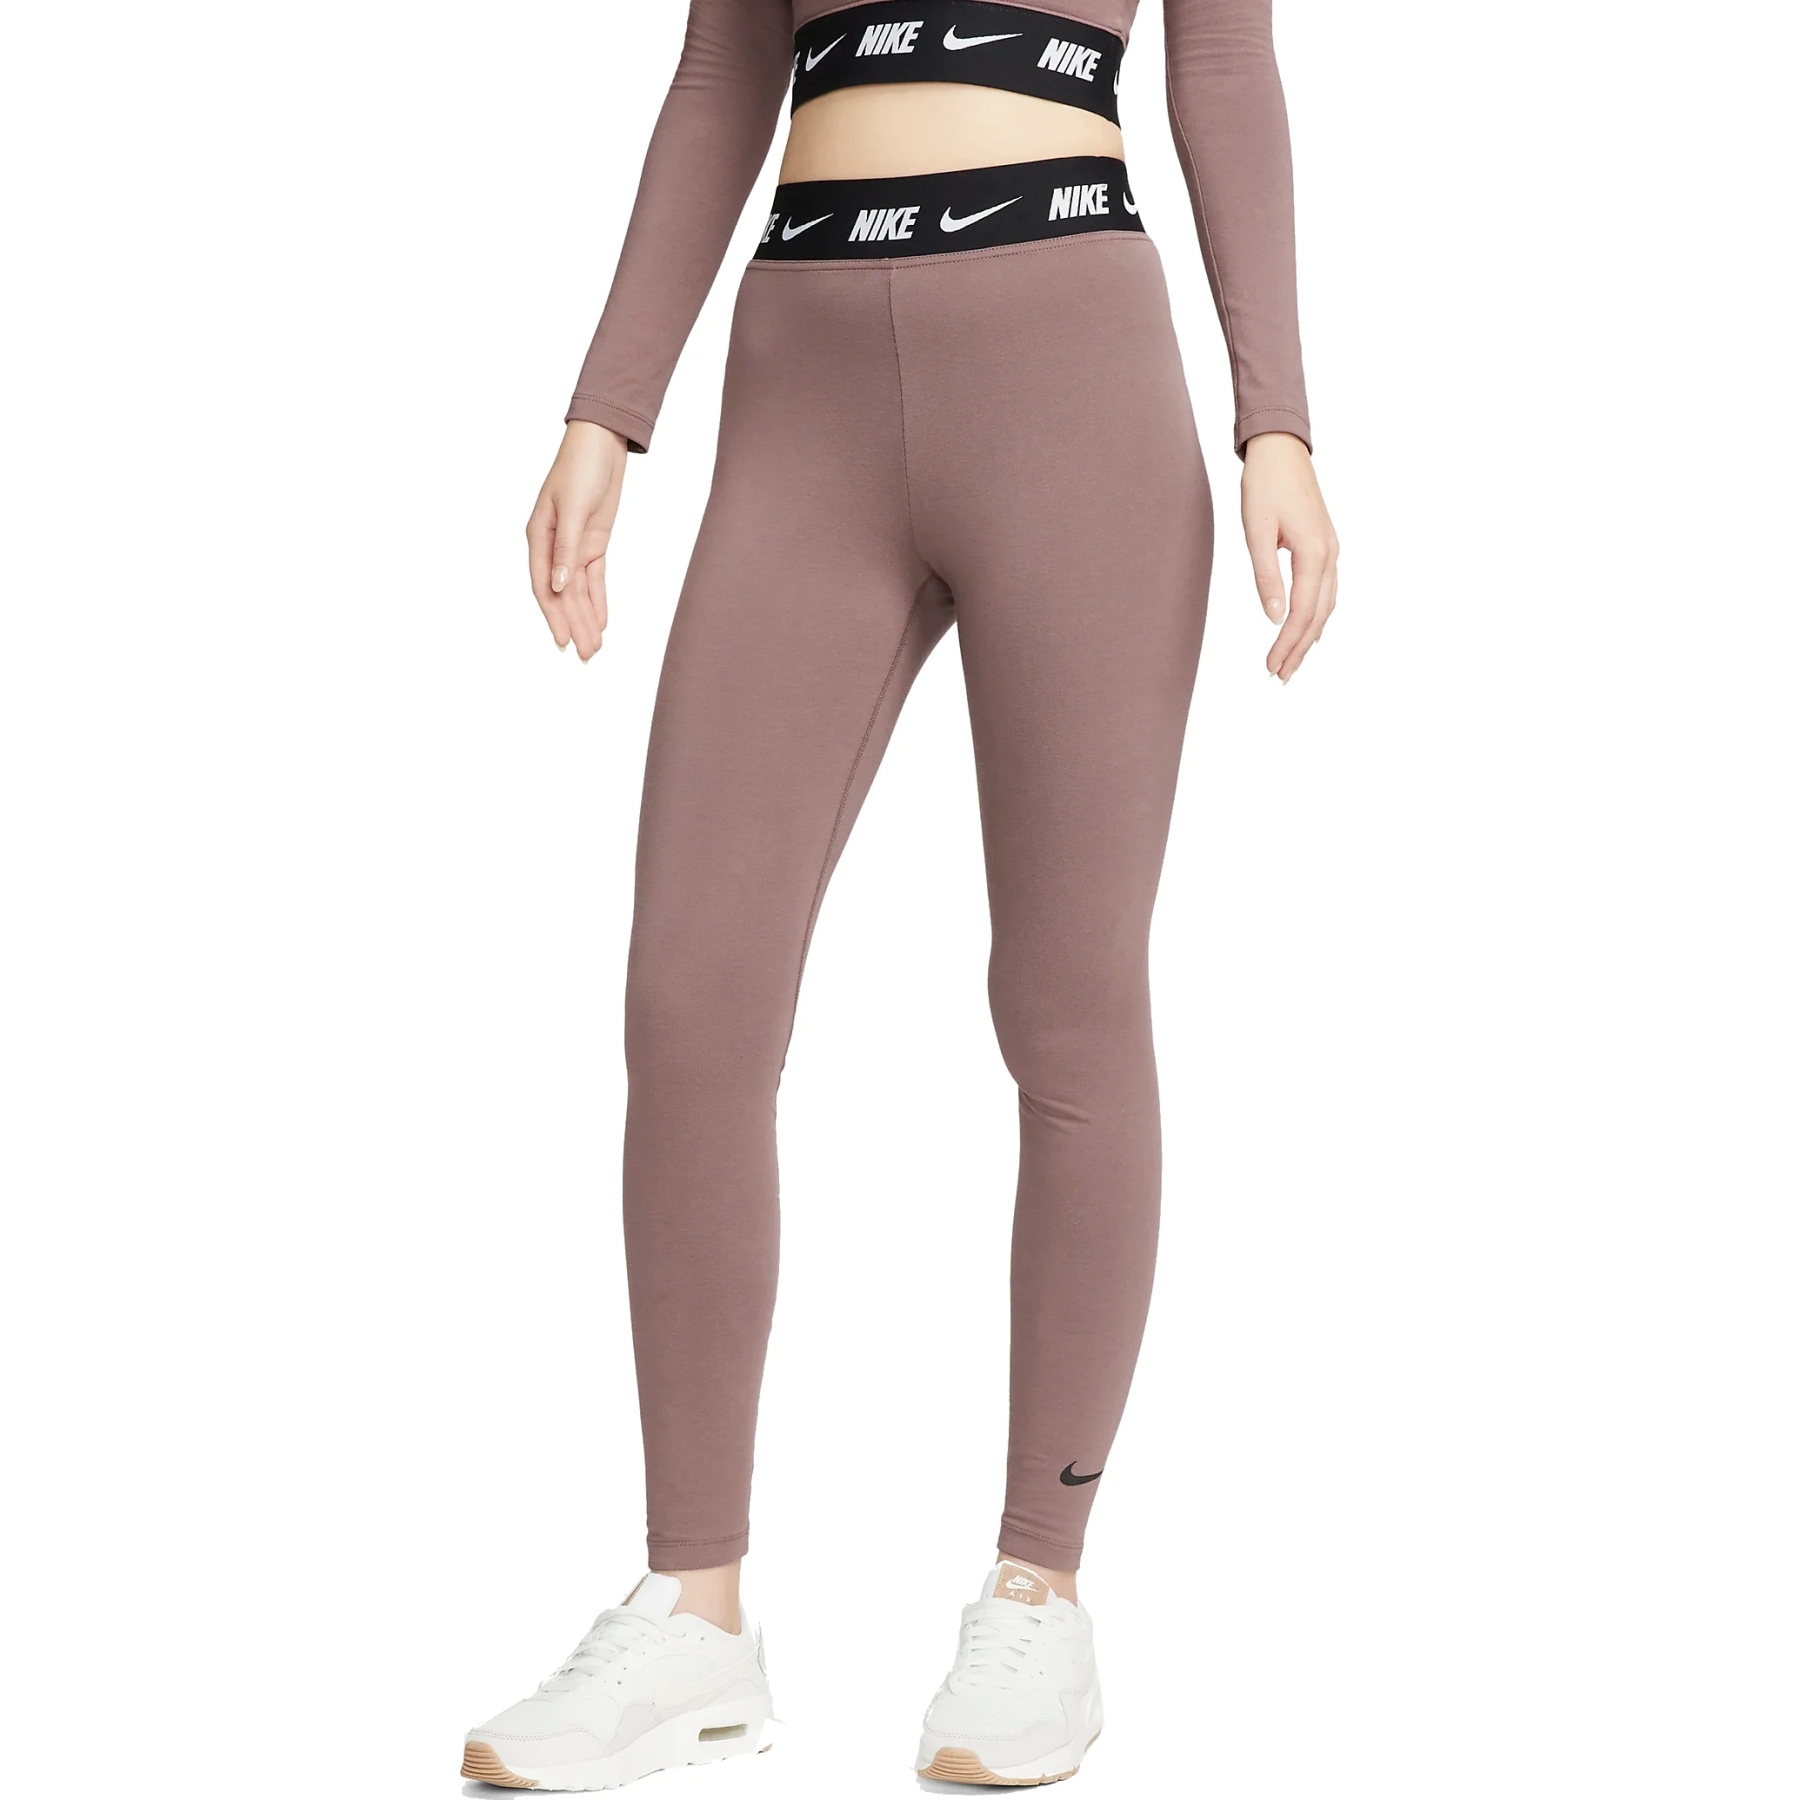 Produktbild von Nike Sportswear Club Leggings mit hohem Bund Damen - plum eclipse/black DM4651-291